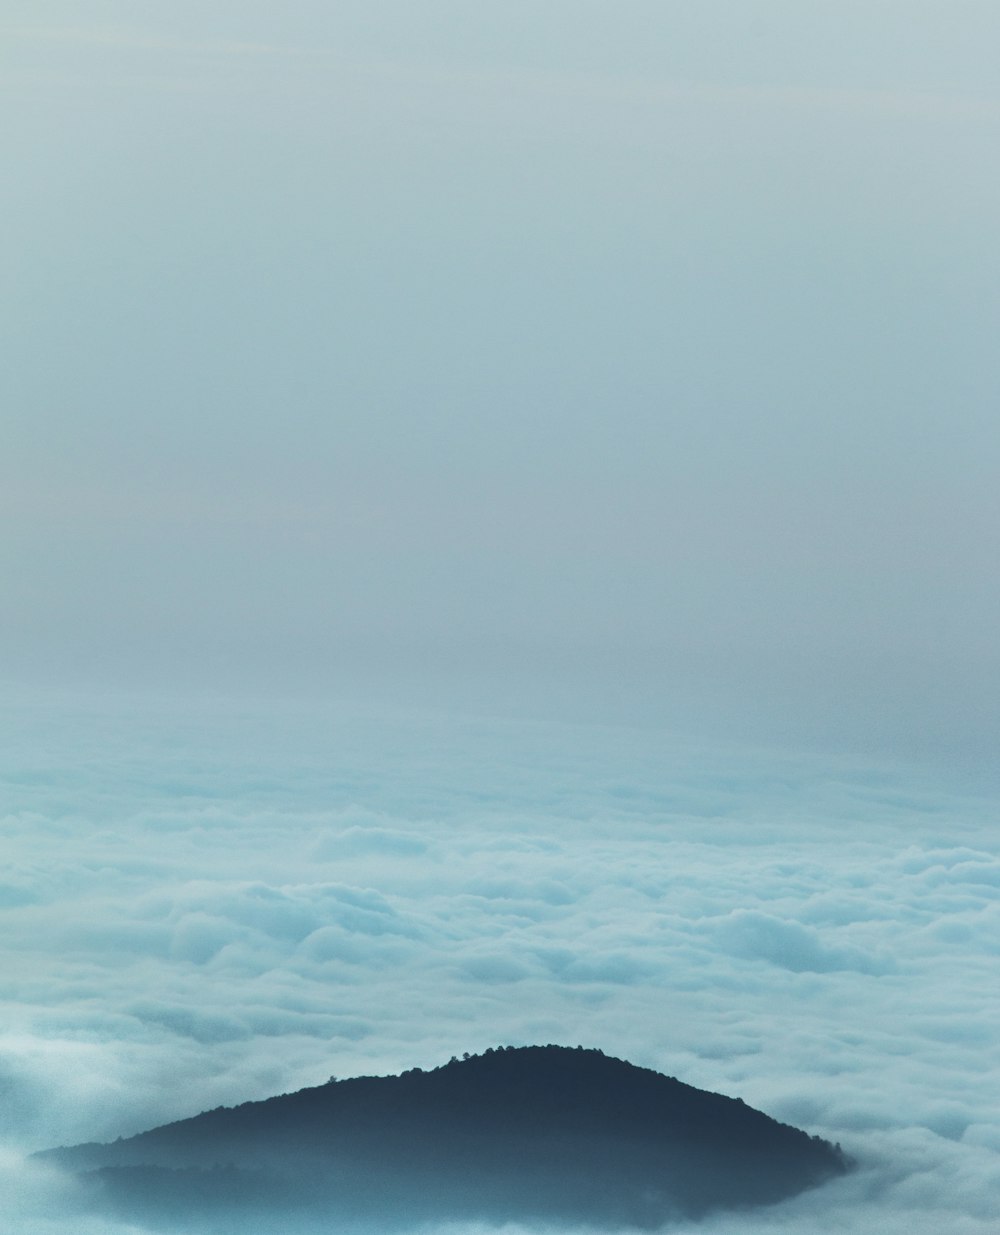 緑の山を抜ける雲海